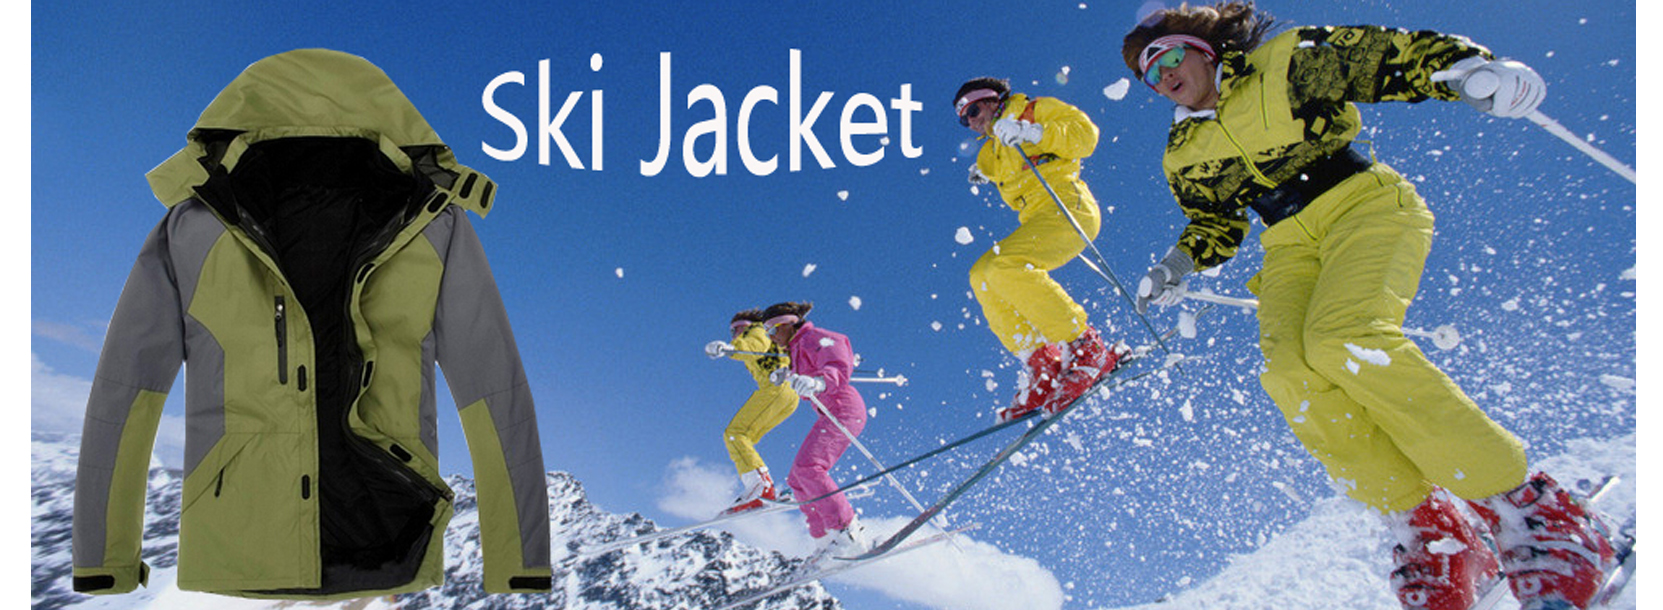 Waterproof Ski Jacket